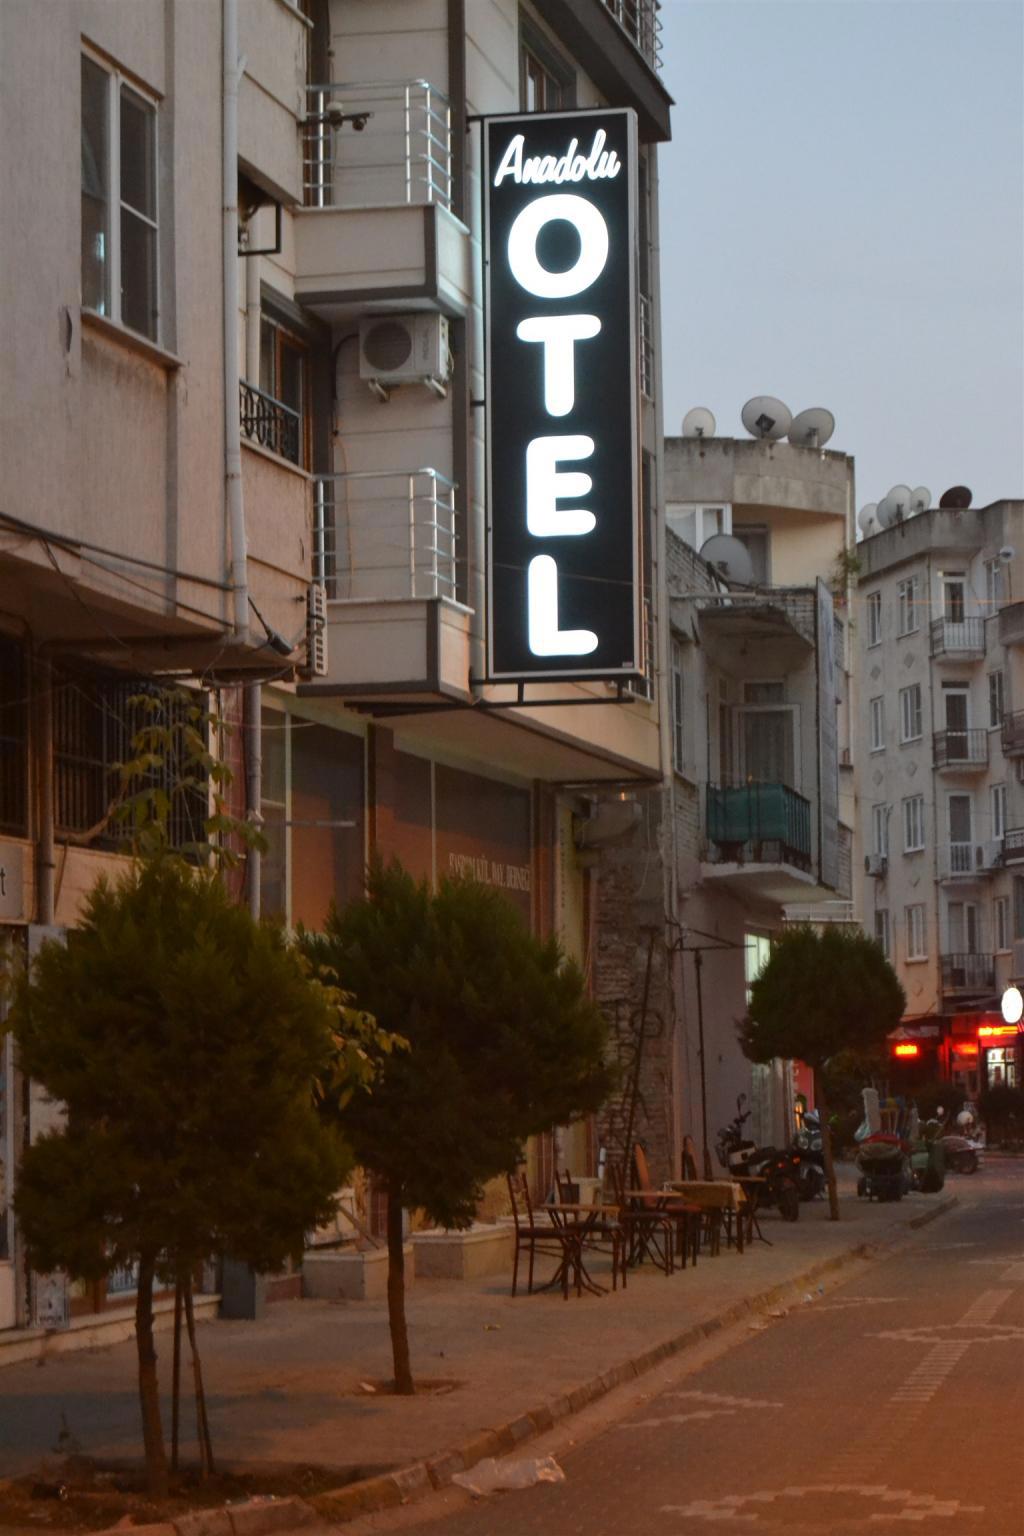 Anadolu Hotel